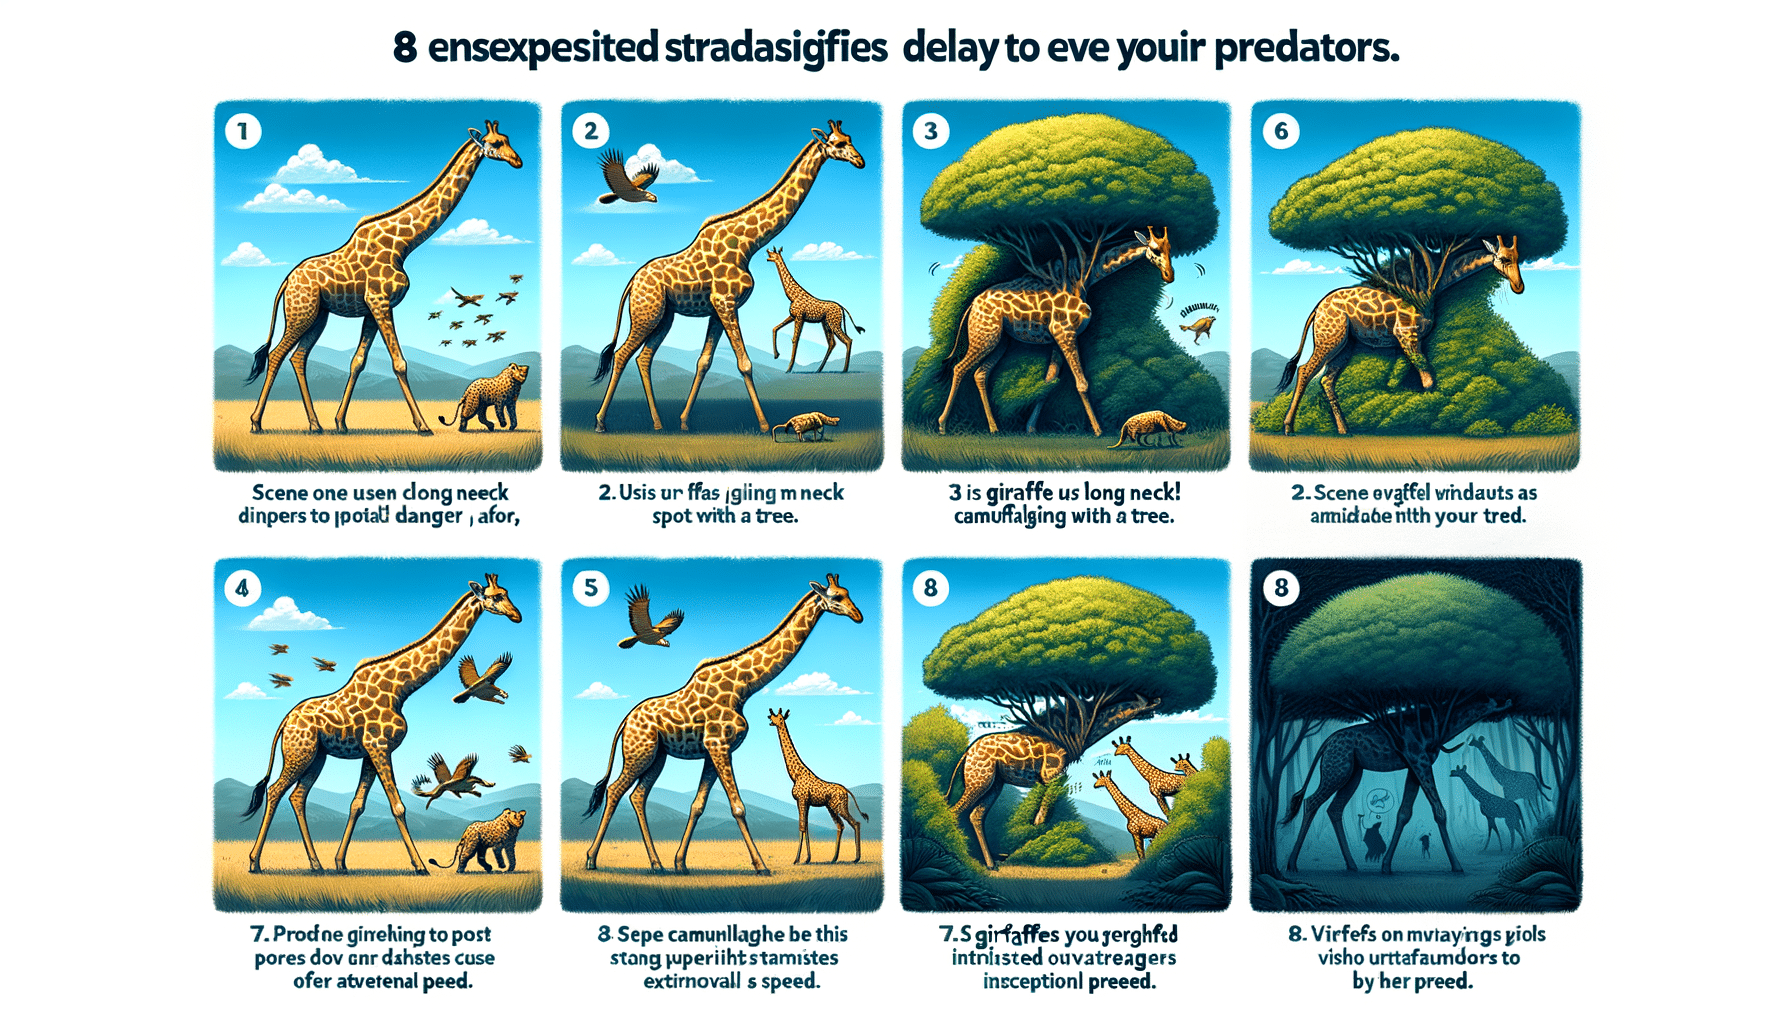 découvrez huit anecdotes insolites sur les girafes et comment elles se protègent des prédateurs dans cet article fascinant !